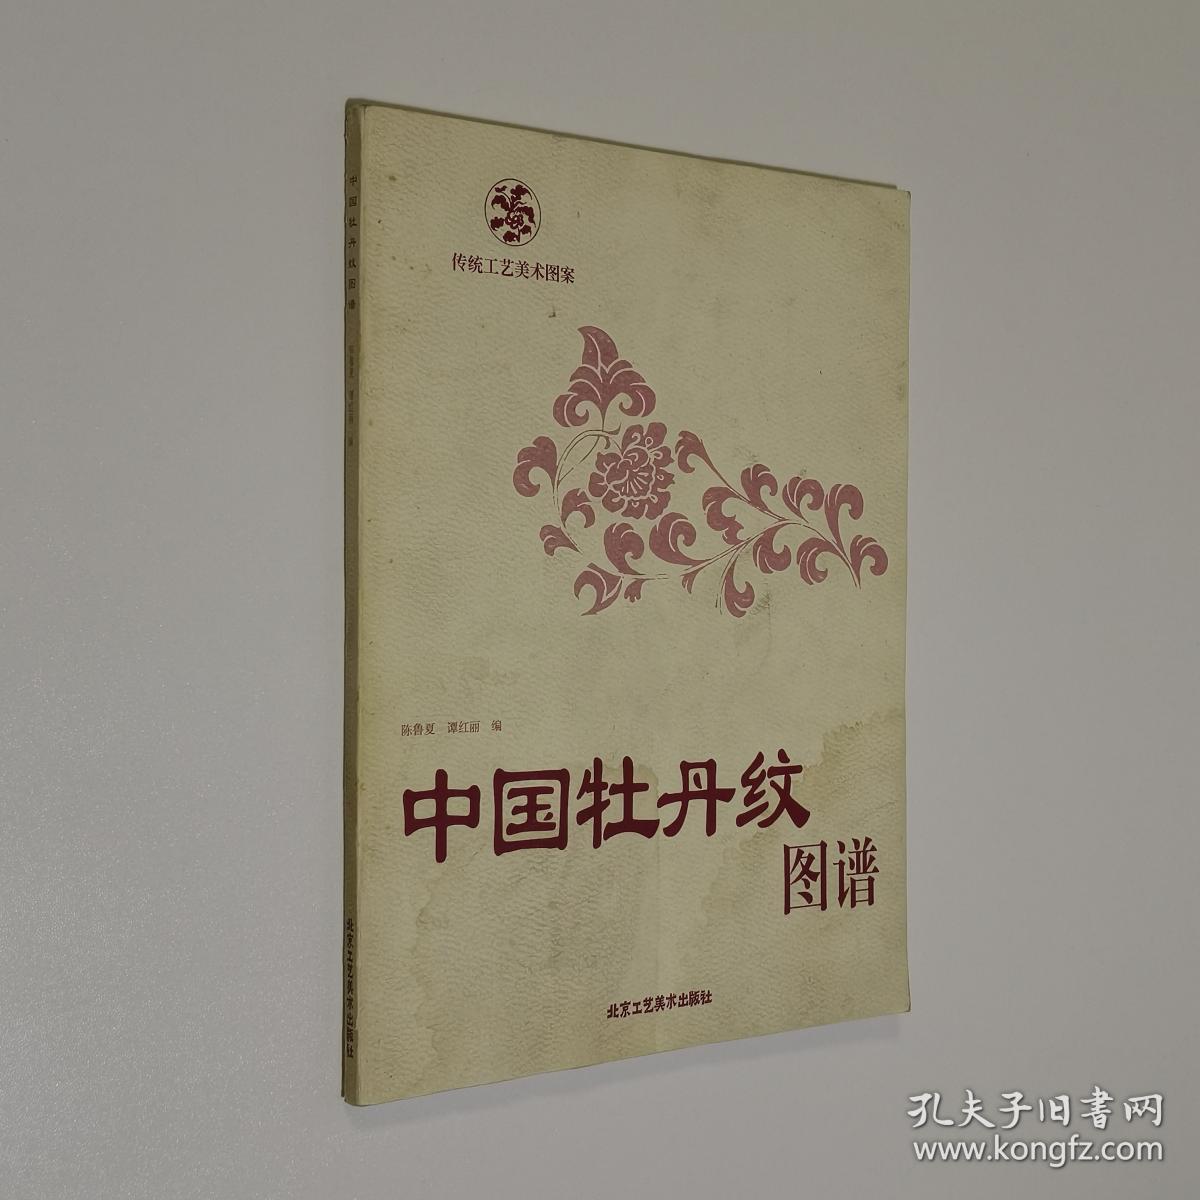 中国牡丹纹图谱 16开 平装本